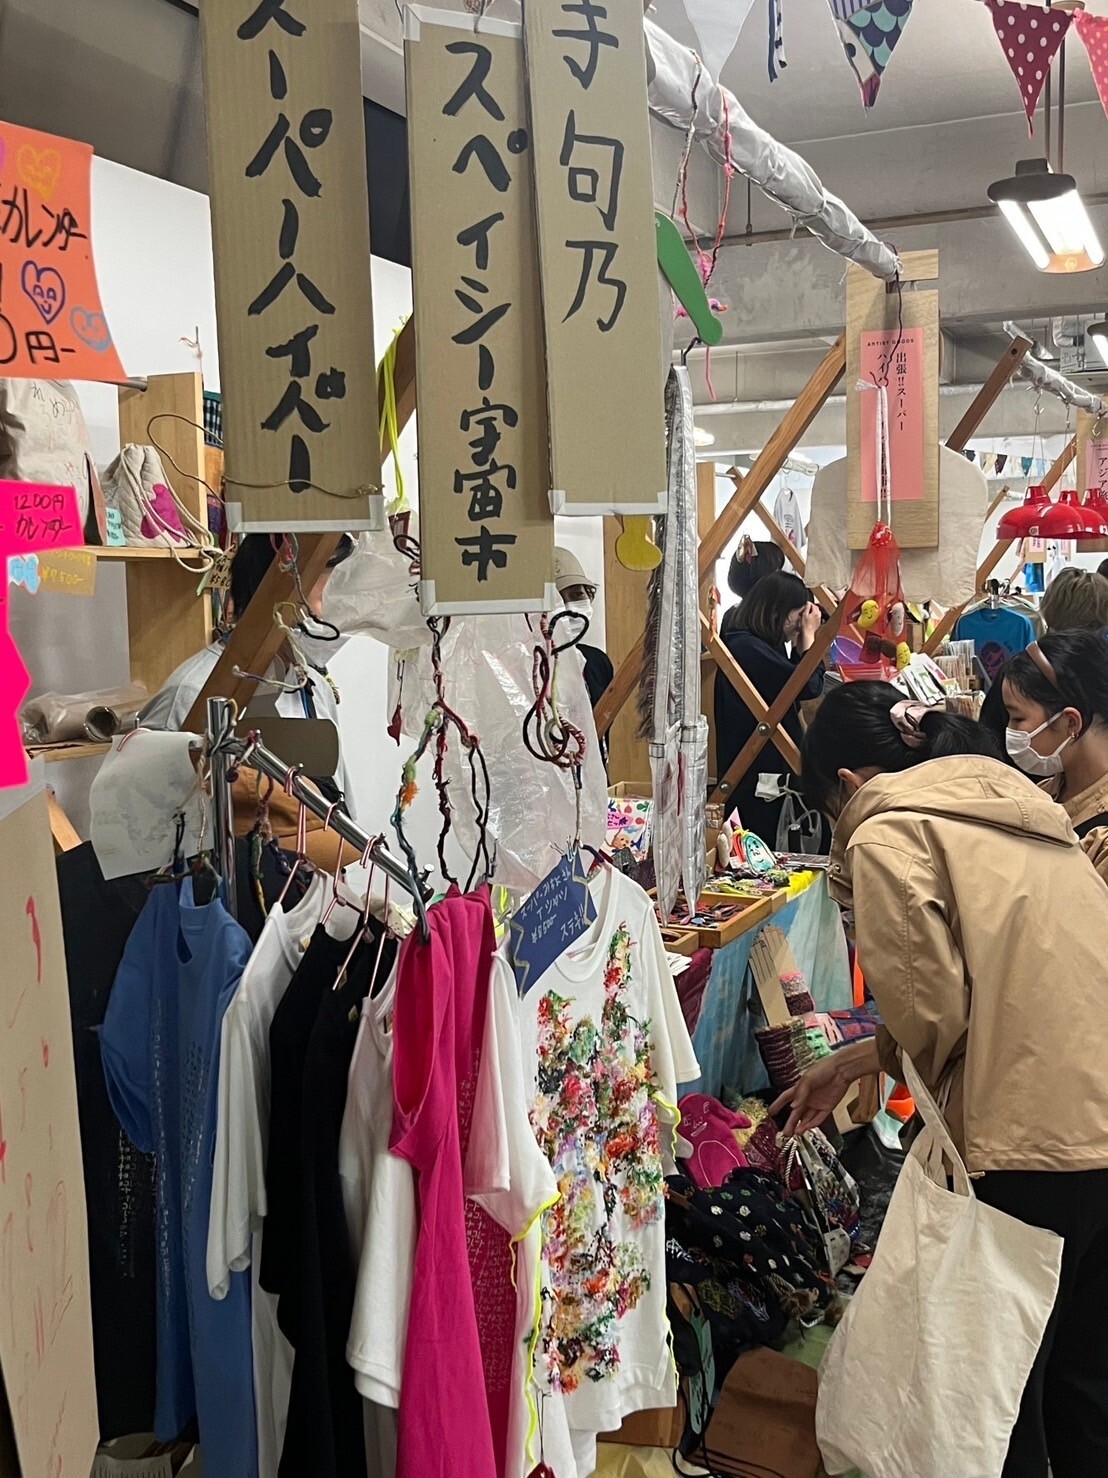 王茹羚在日本的學習活動分享01-參觀大阪藝術市集（autumn&asia book market),有許多手工藝的特殊商品與藝術家講座。